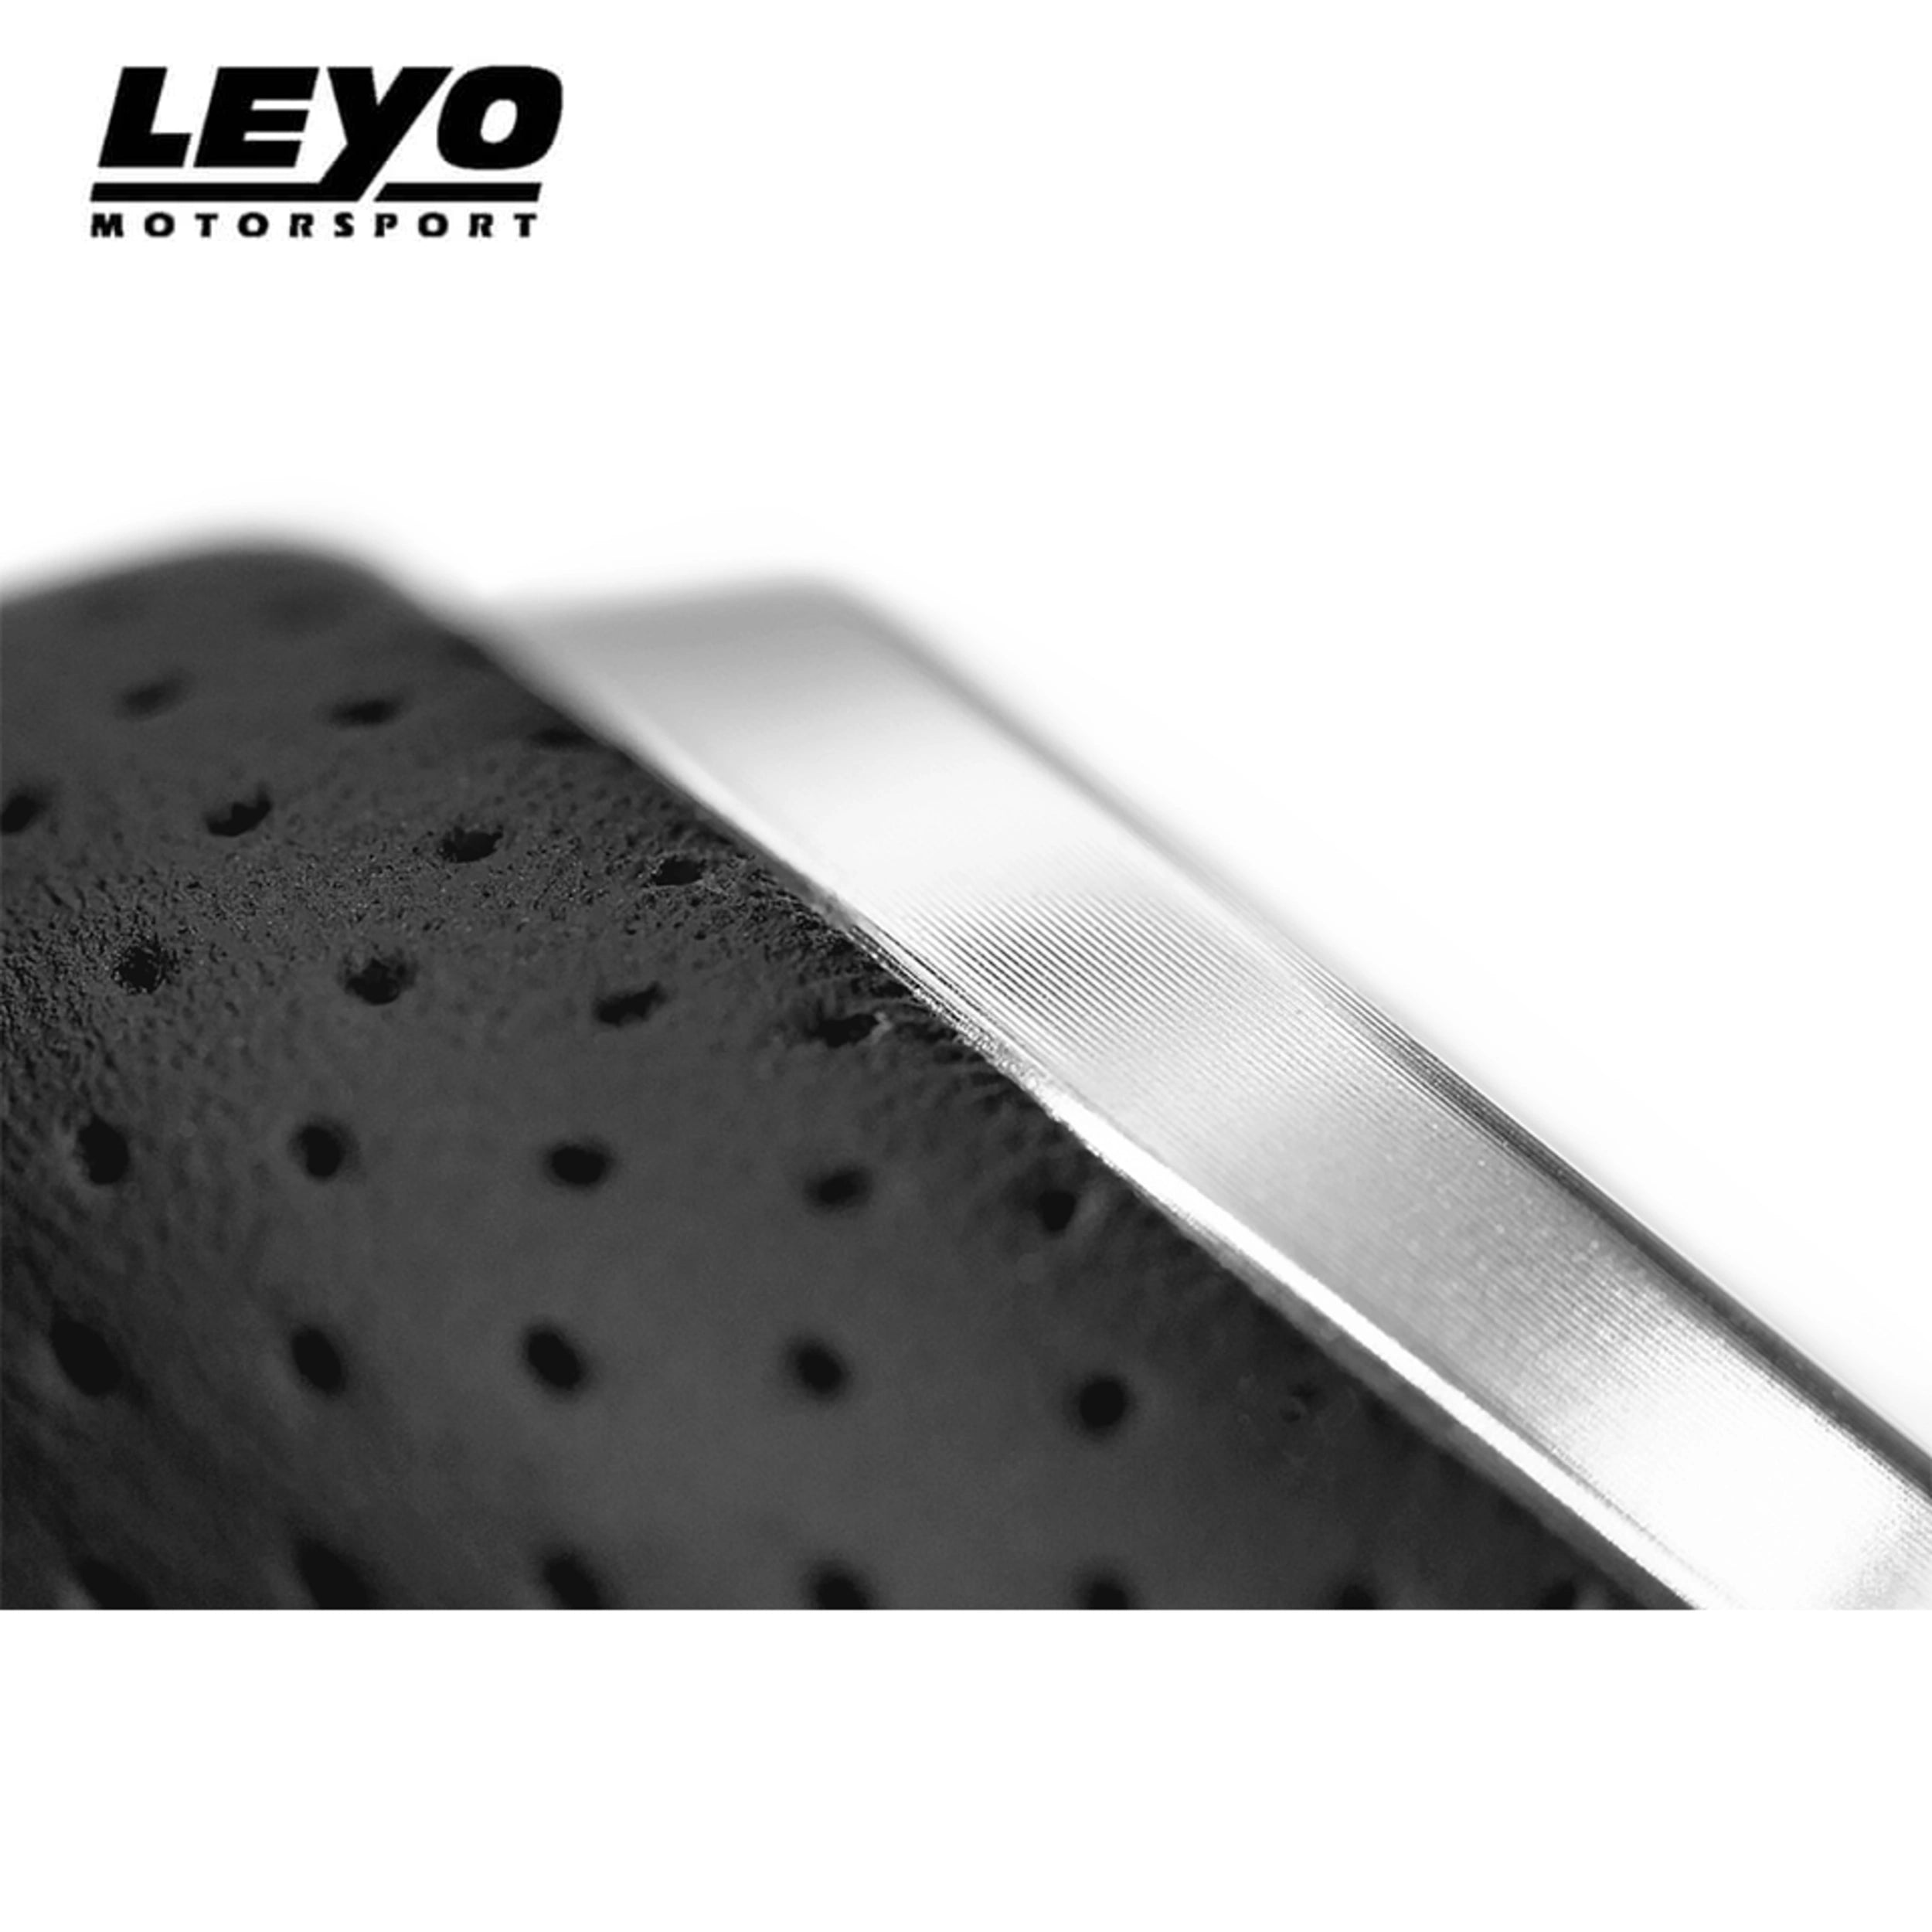 Leyo Nappa Manual Shift Knob (Silver)